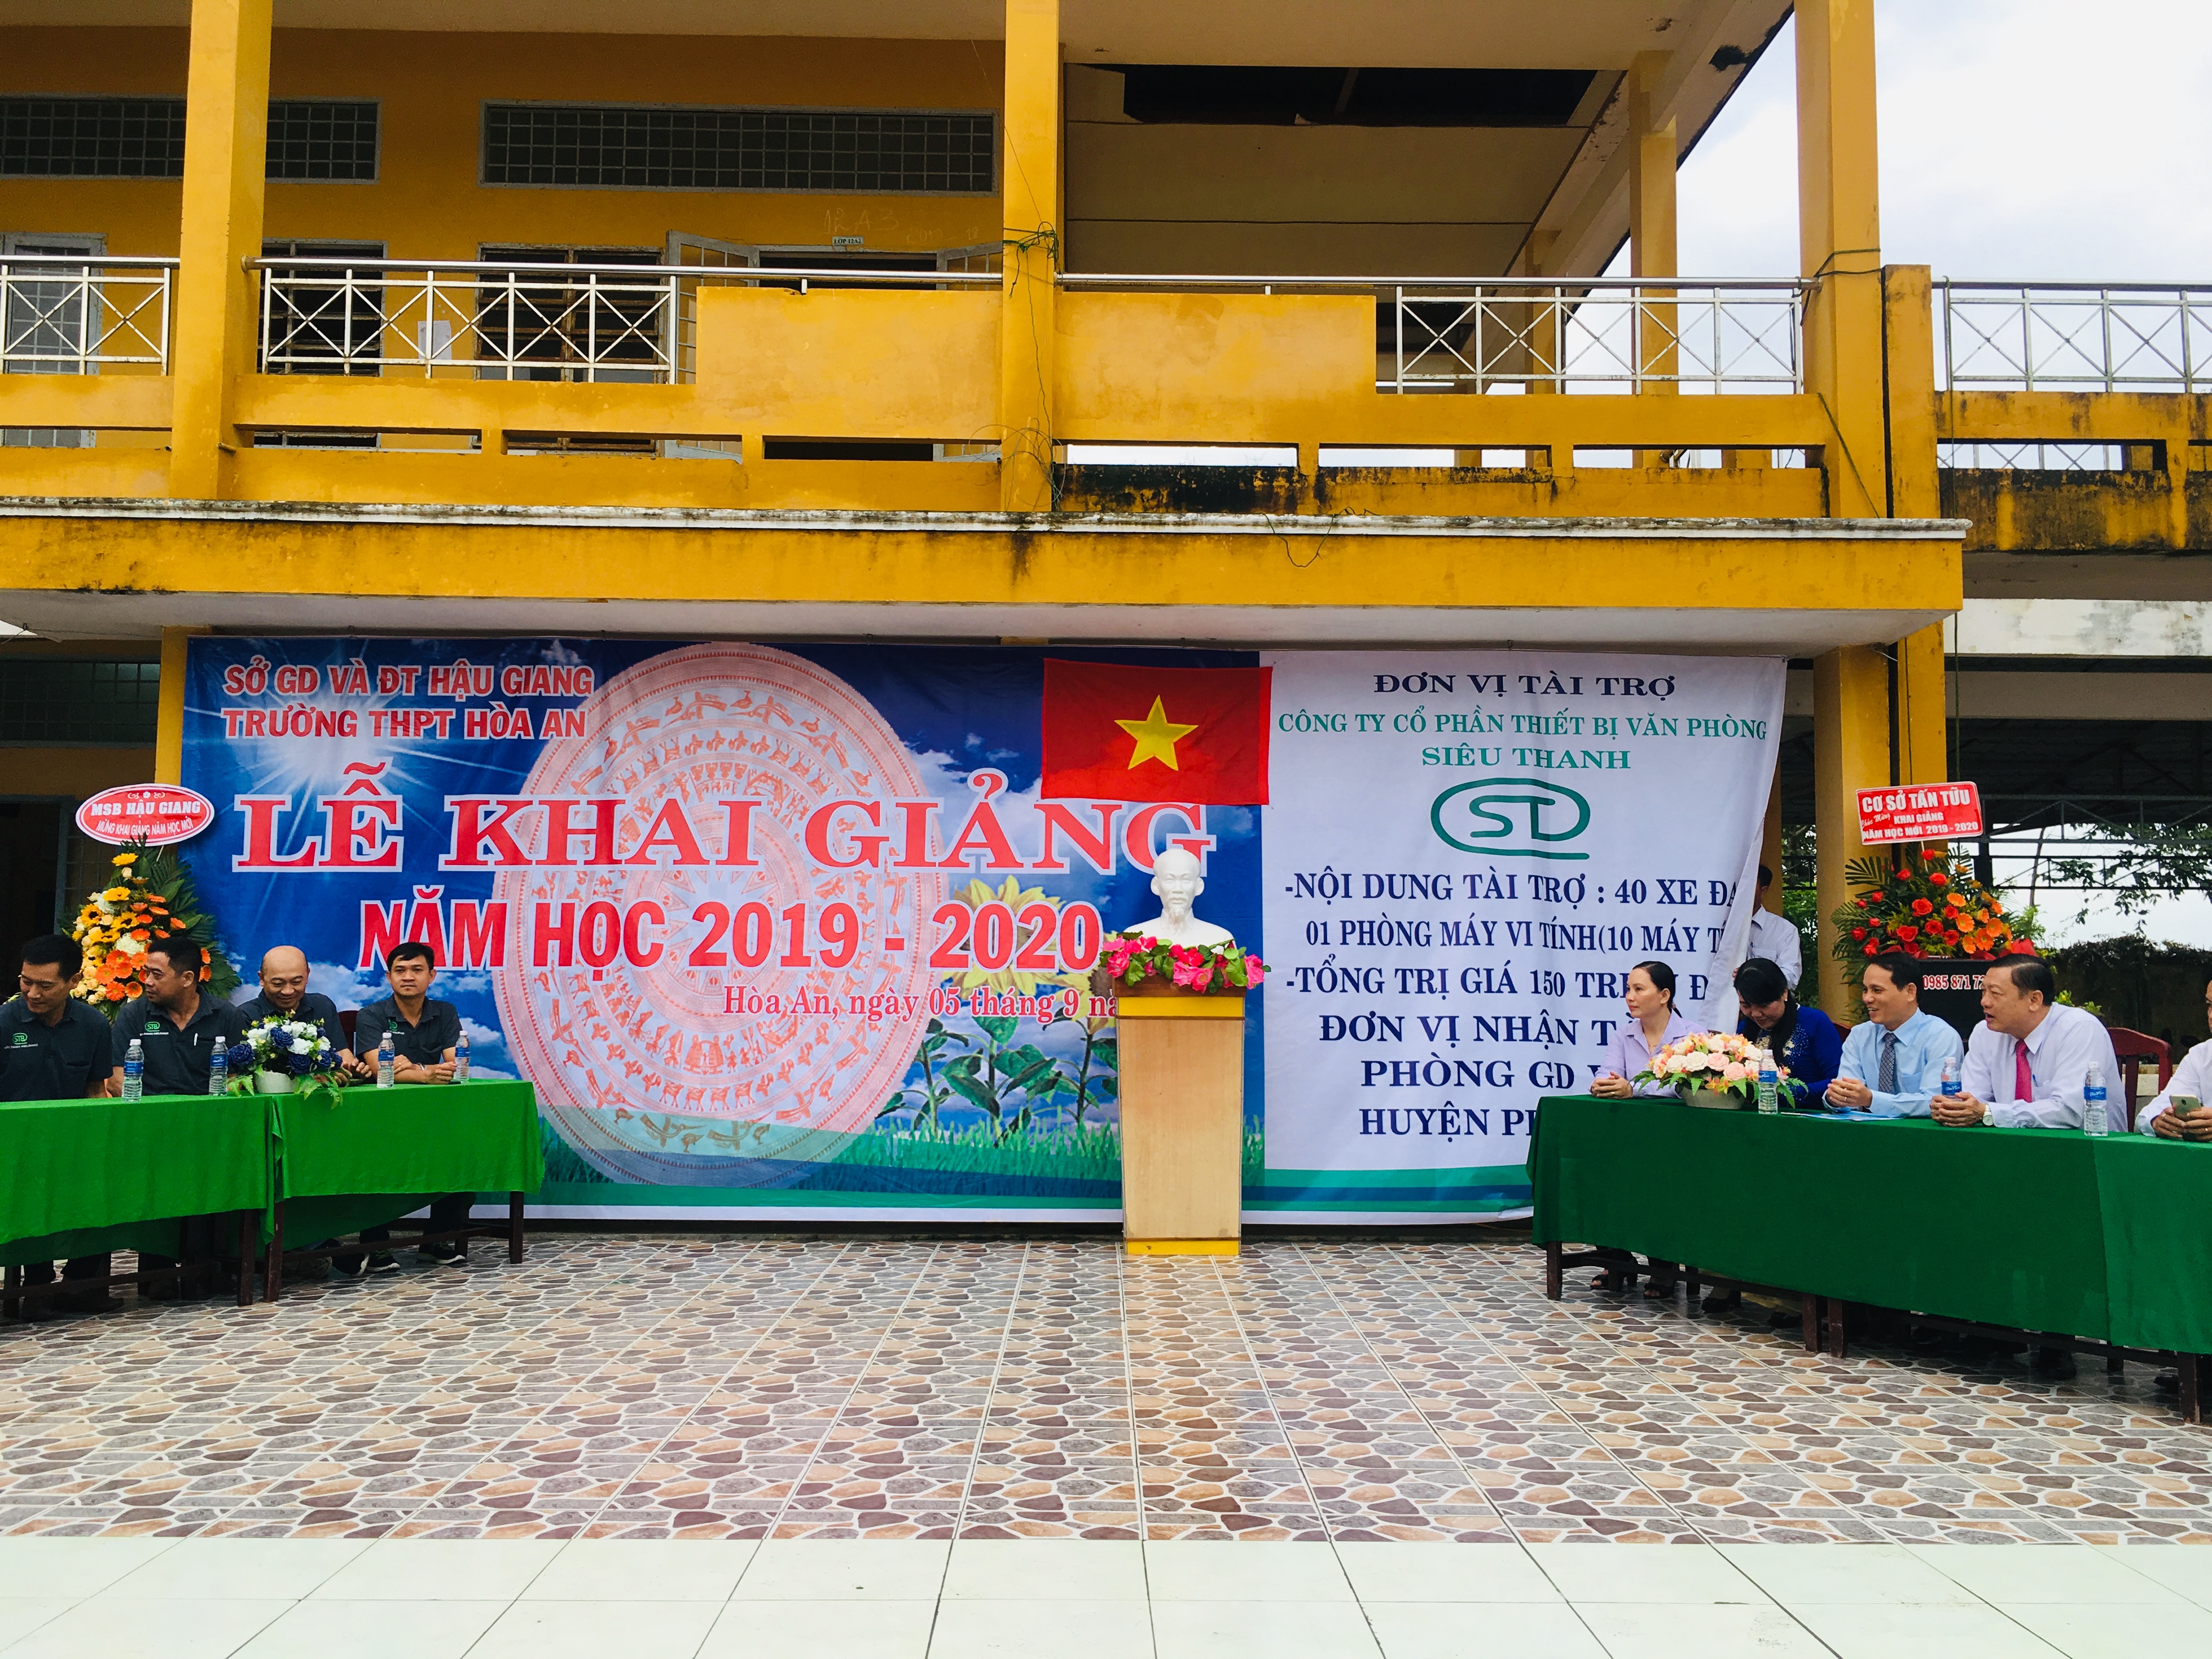 Siêu thanh tài trợ Phòng máy vi tính và xe đạp cho học sinh Trường THPT Hòa An - Hậu Giang